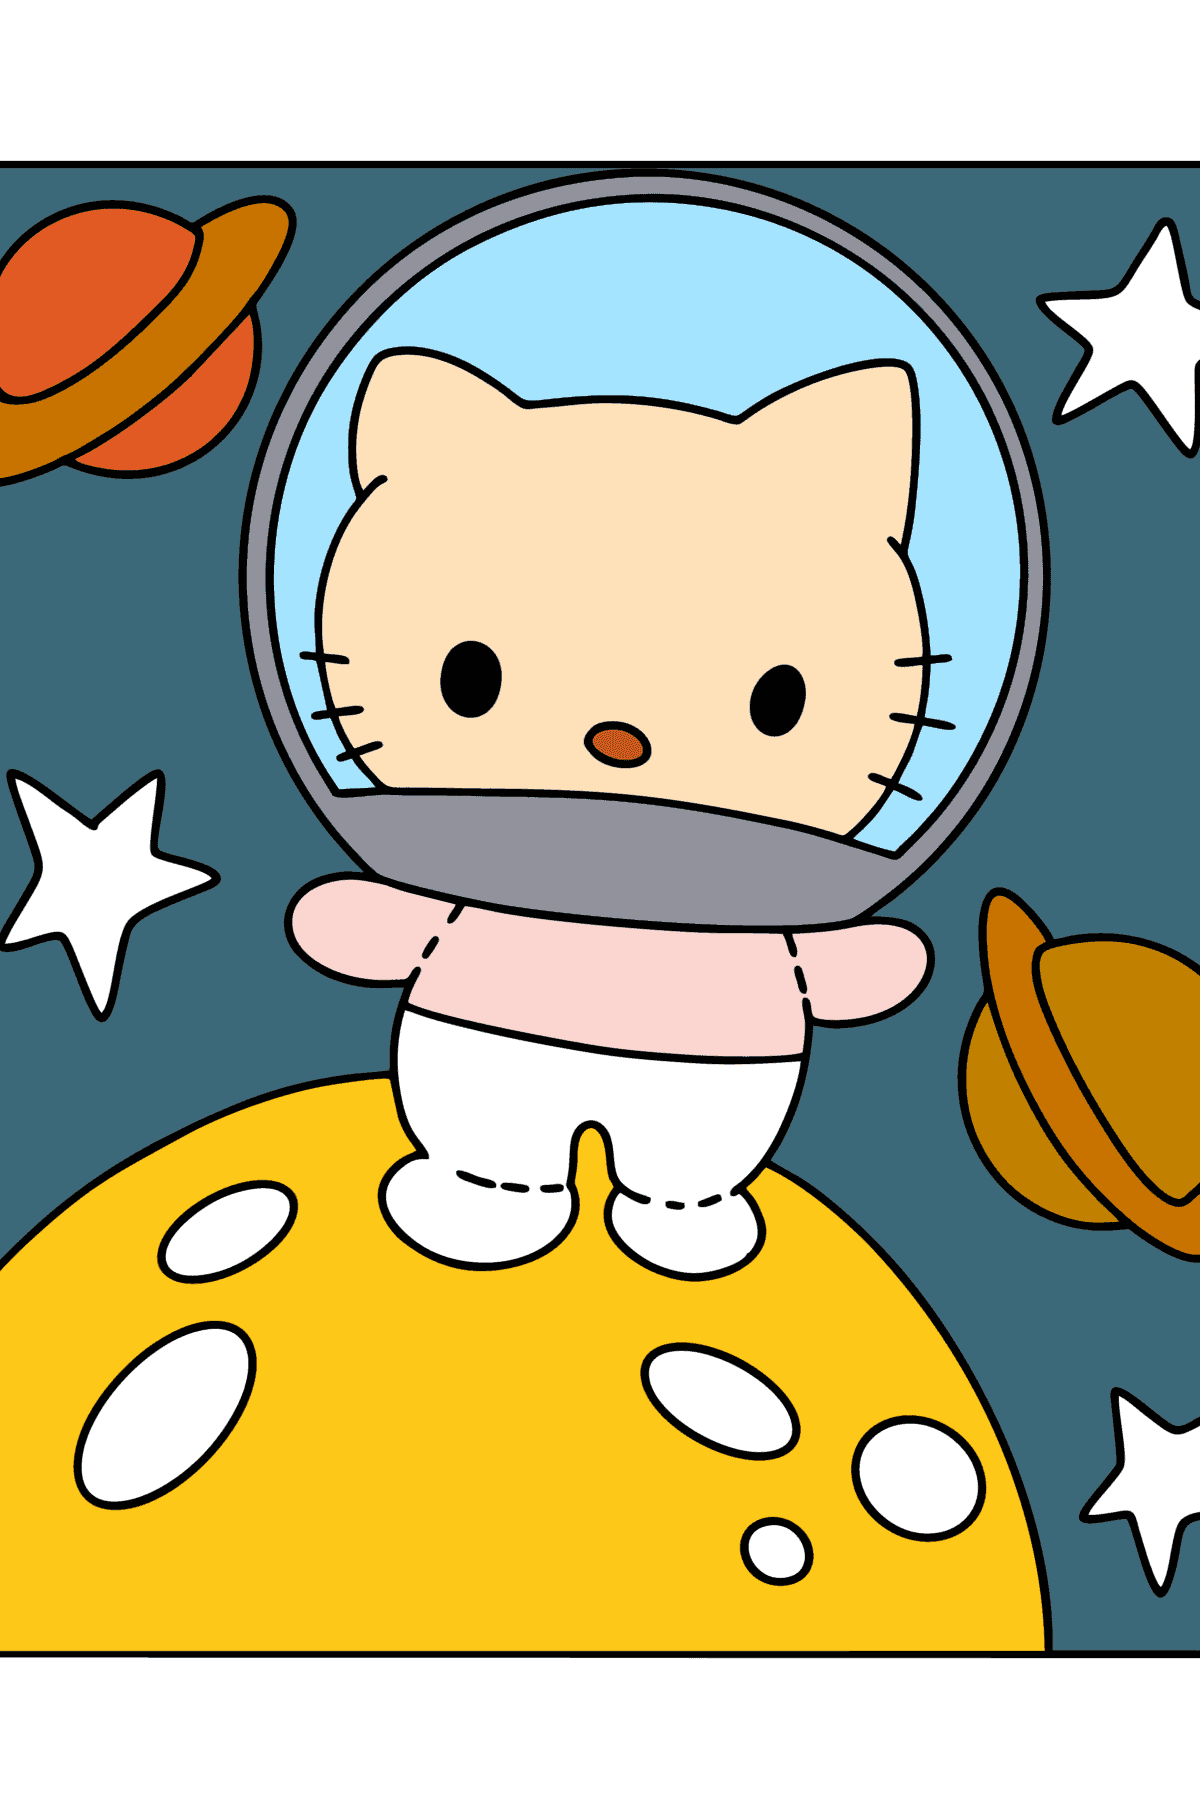 Mewarnai gambar Hello Kitty astronaut - Mewarnai gambar untuk anak-anak